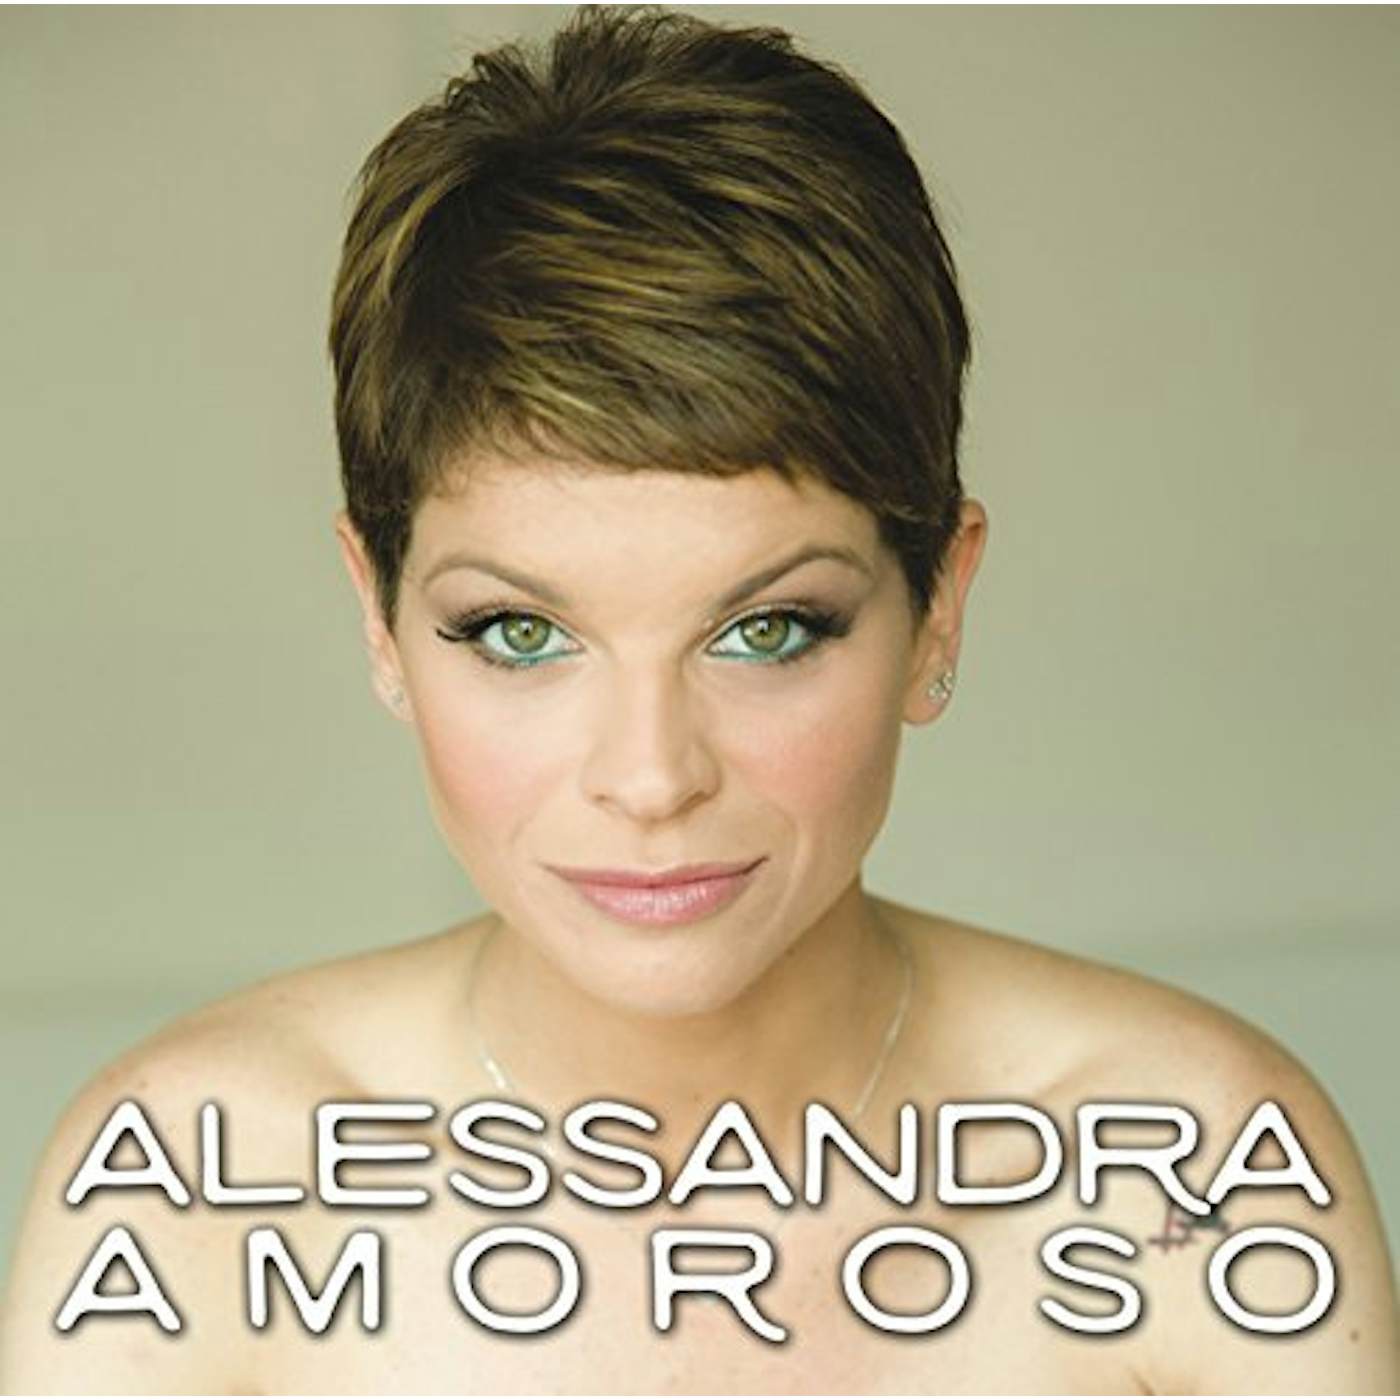 ALESSANDRA AMOROSO CD